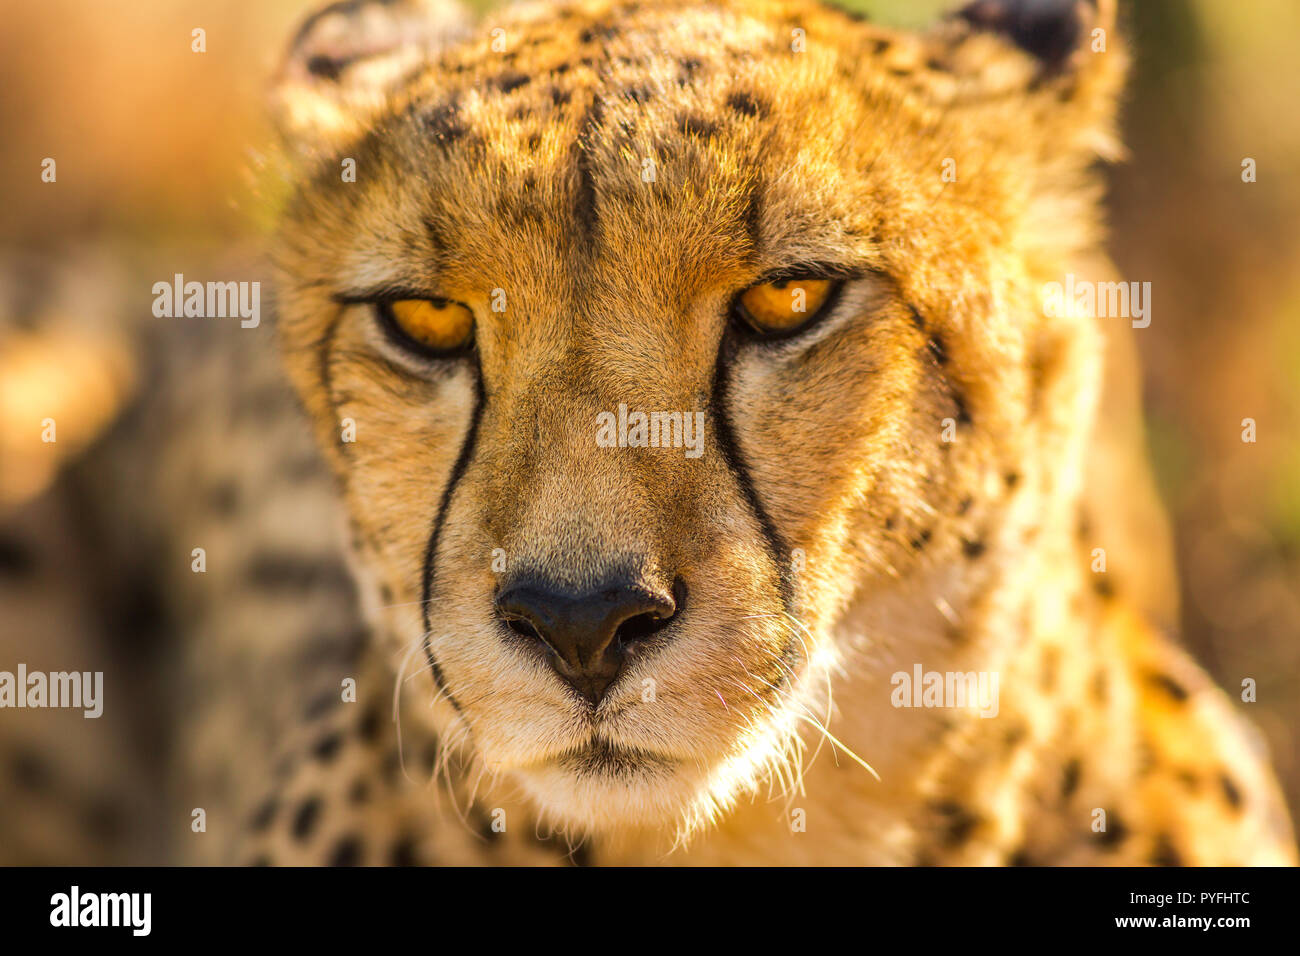 Portrait von cheetah Art Acinonyx jubatus, Familie der Feliden, in Südafrika. Vorderansicht des afrikanischen Geparden auf verschwommenen Hintergrund. Stockfoto